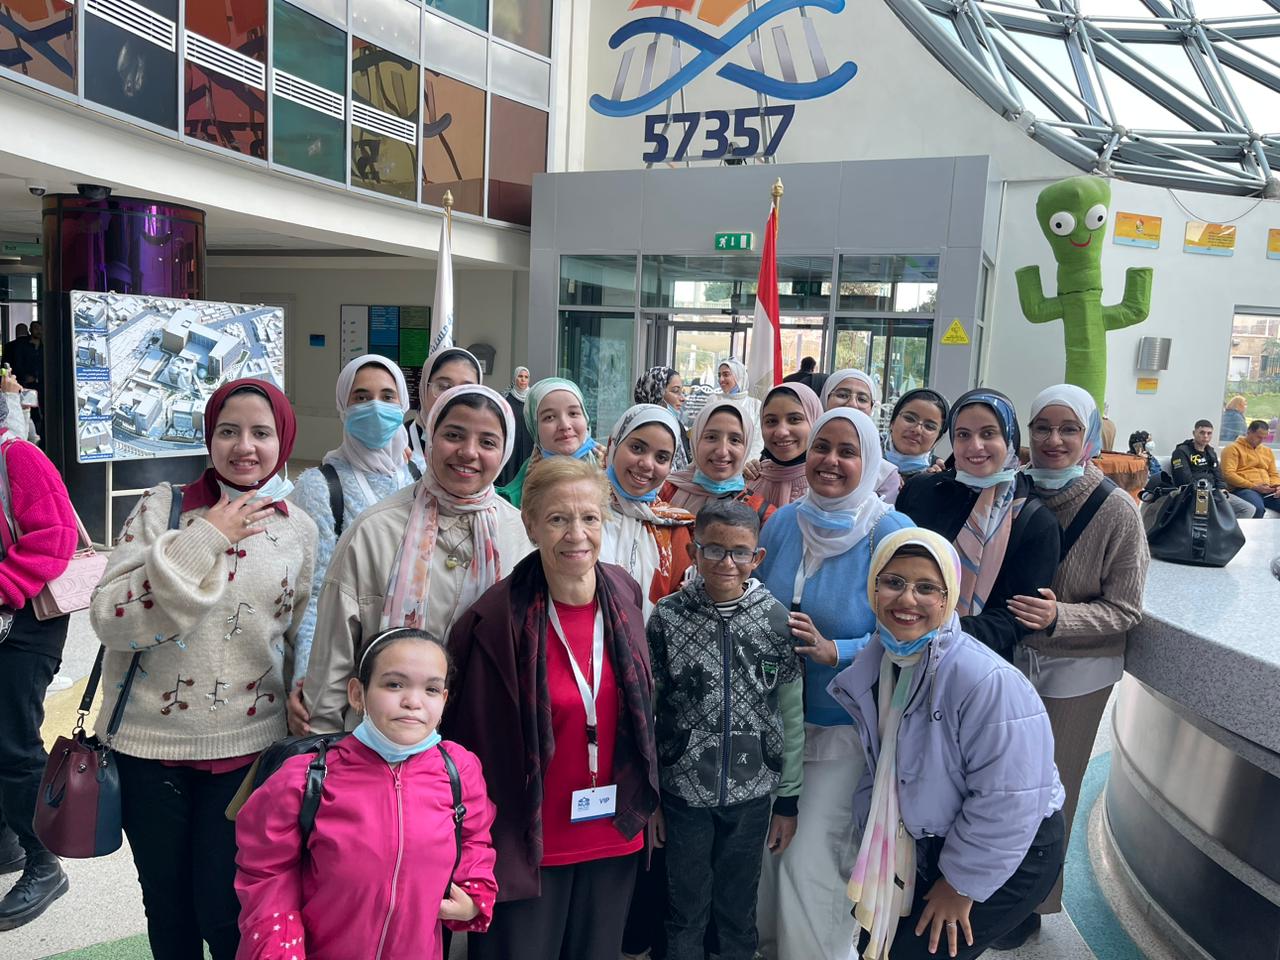 طلاب جامعة النهضة في زيارة لمستشفى 57357